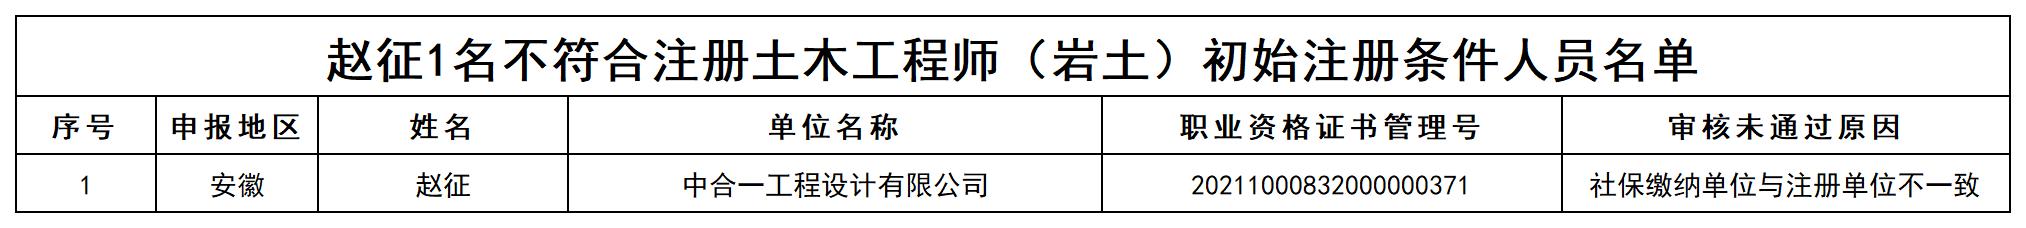 附件6 赵征1名不符合注册土木工程师（岩土）初始注册条件人员名单_打印结果.jpg